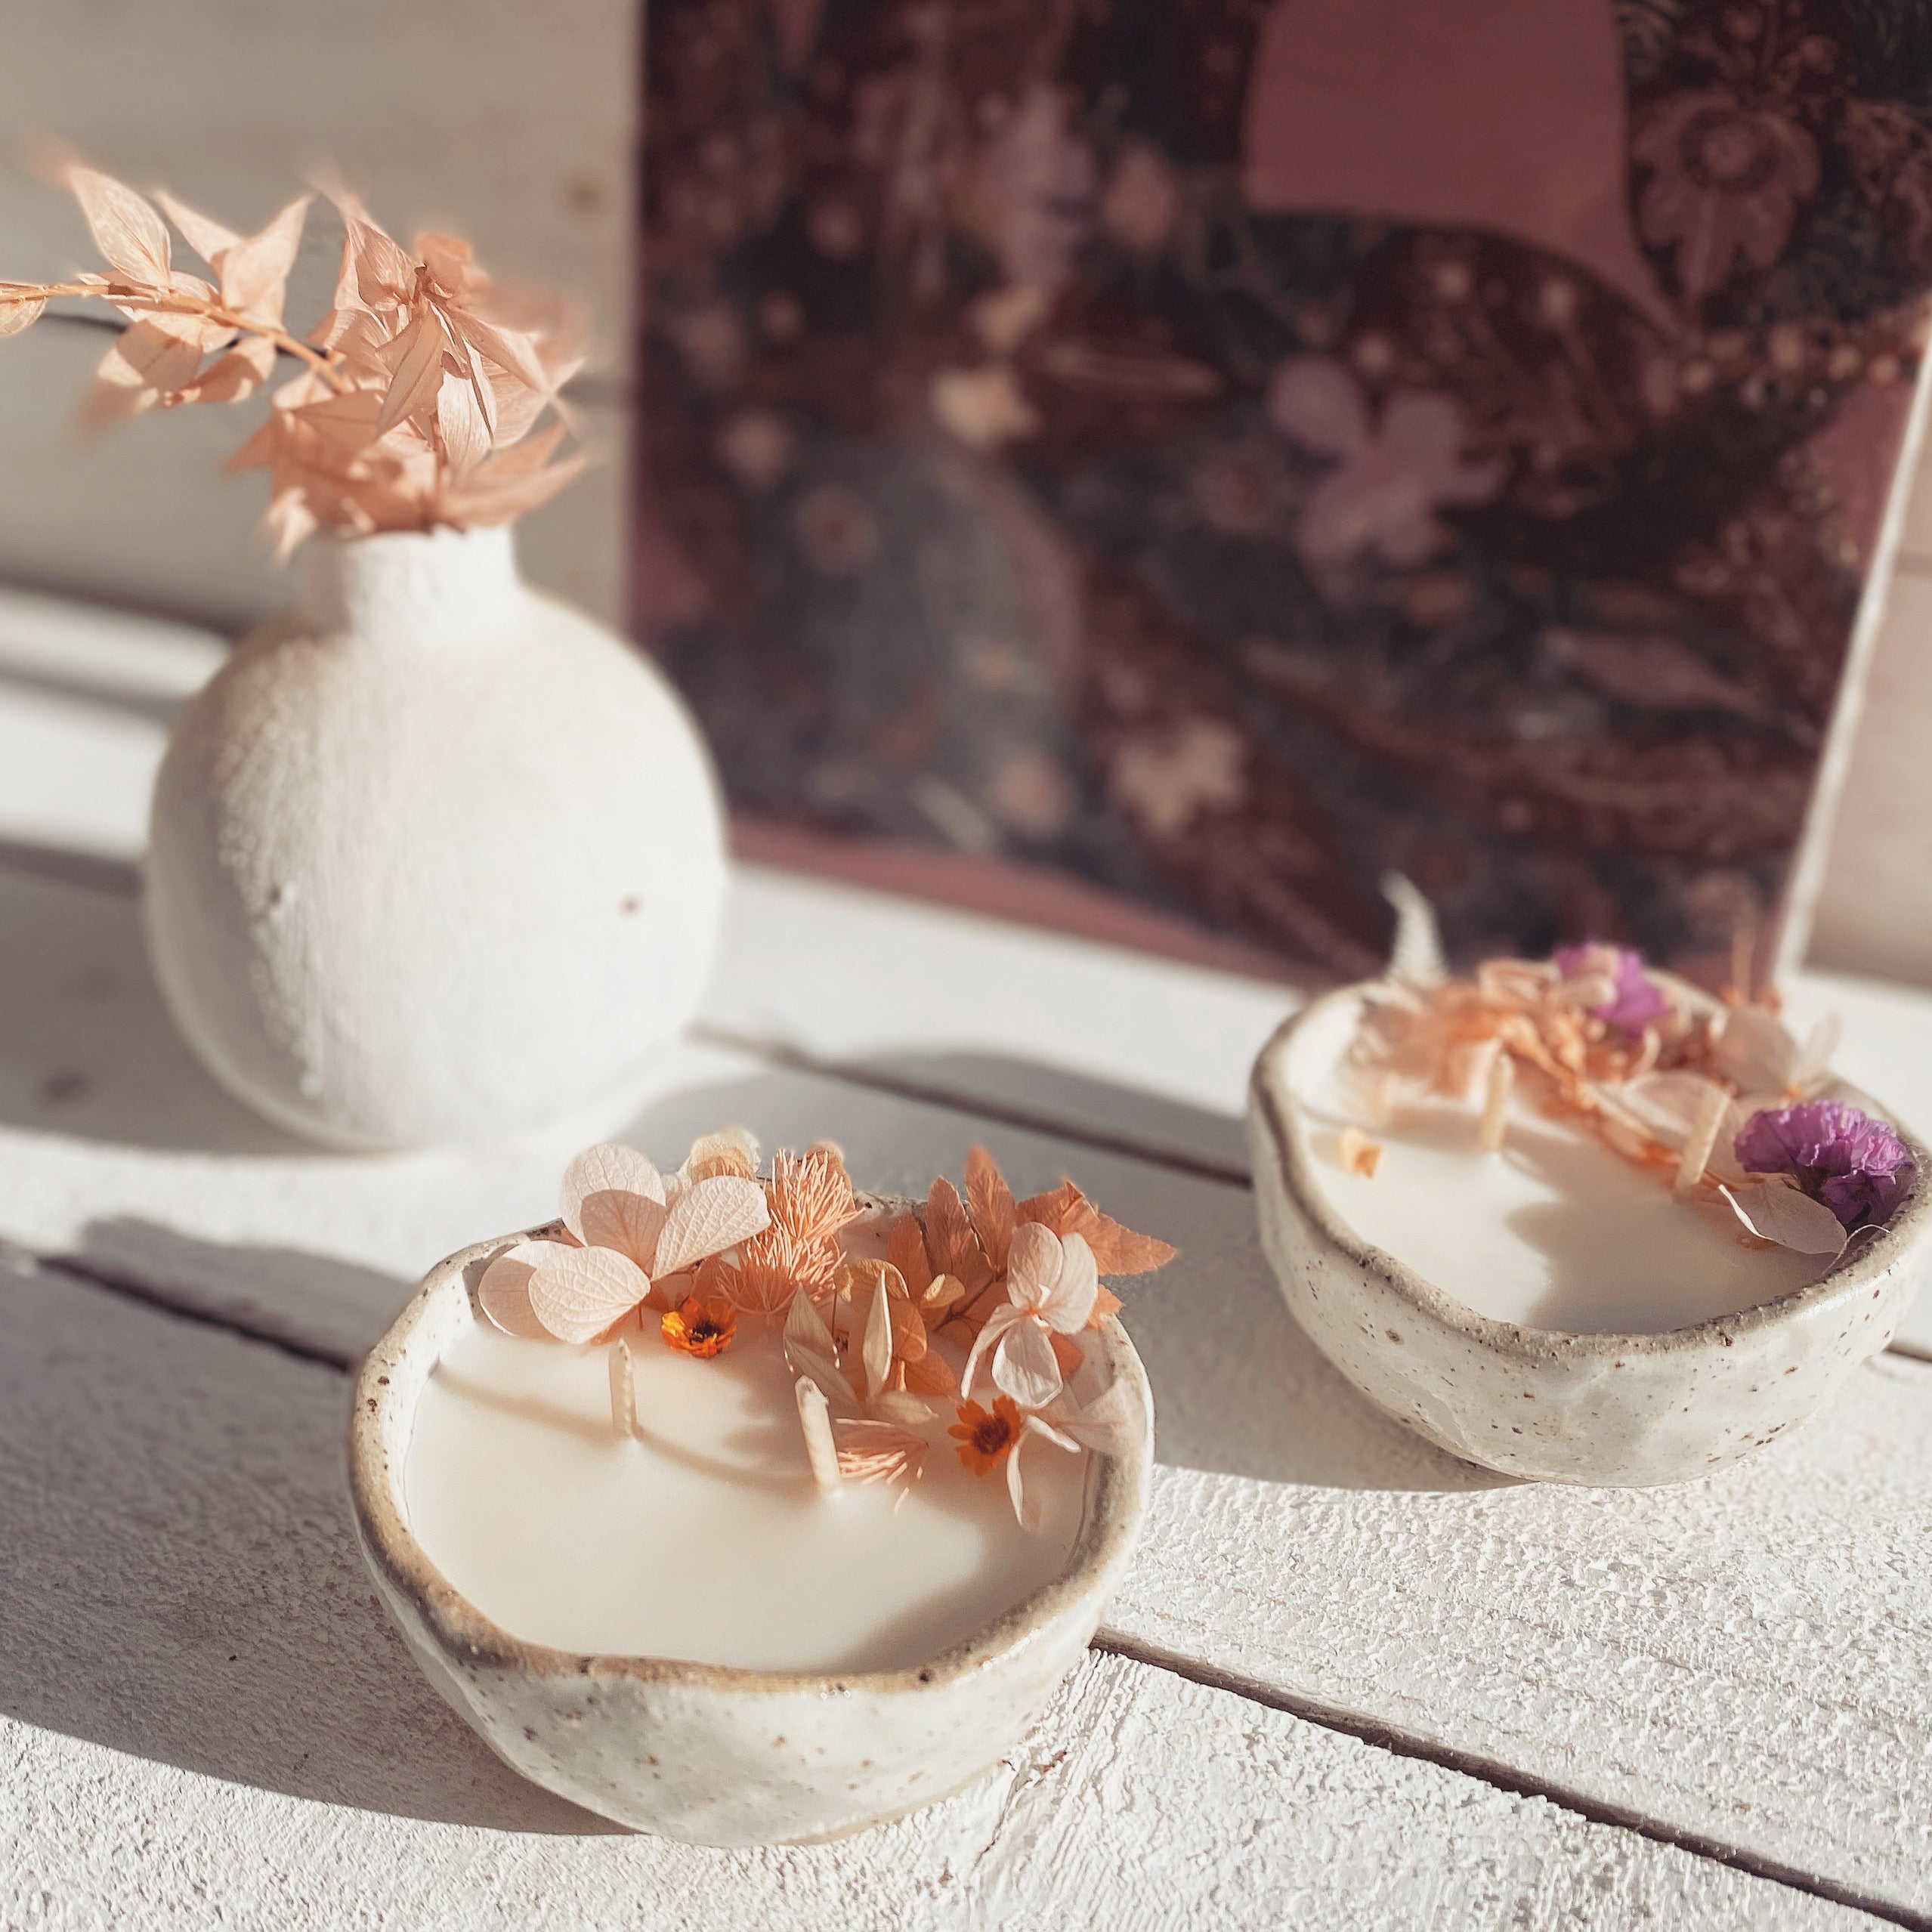 botanica mini ceramic soy candle | kakadu plum